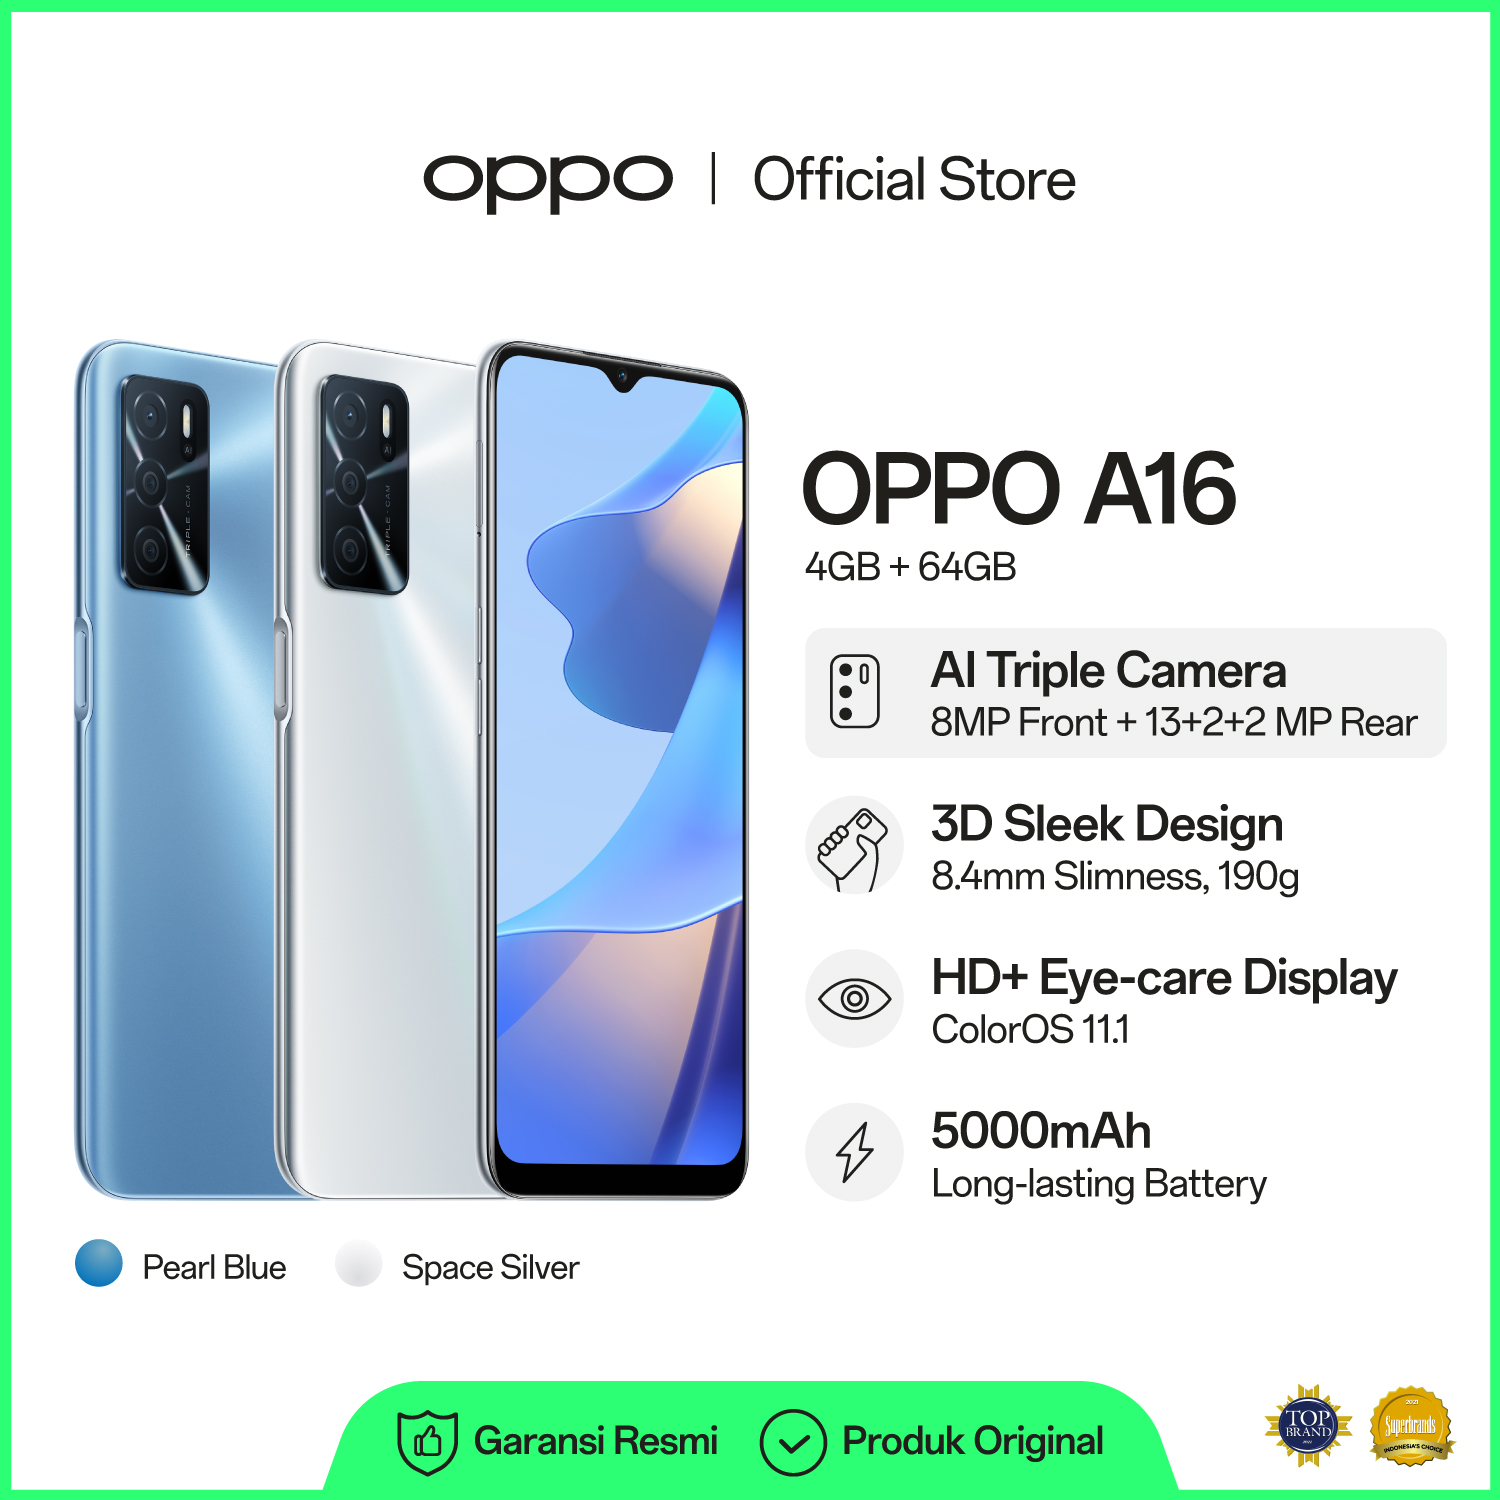  daftar harga dan spesifikasi hp android	 Oppo A16 4Gb/64Gb 13Mp Ai Triple Camera, Hd+ Eyecare Display, 5000Mah Battery, 3D Sleek Design 	